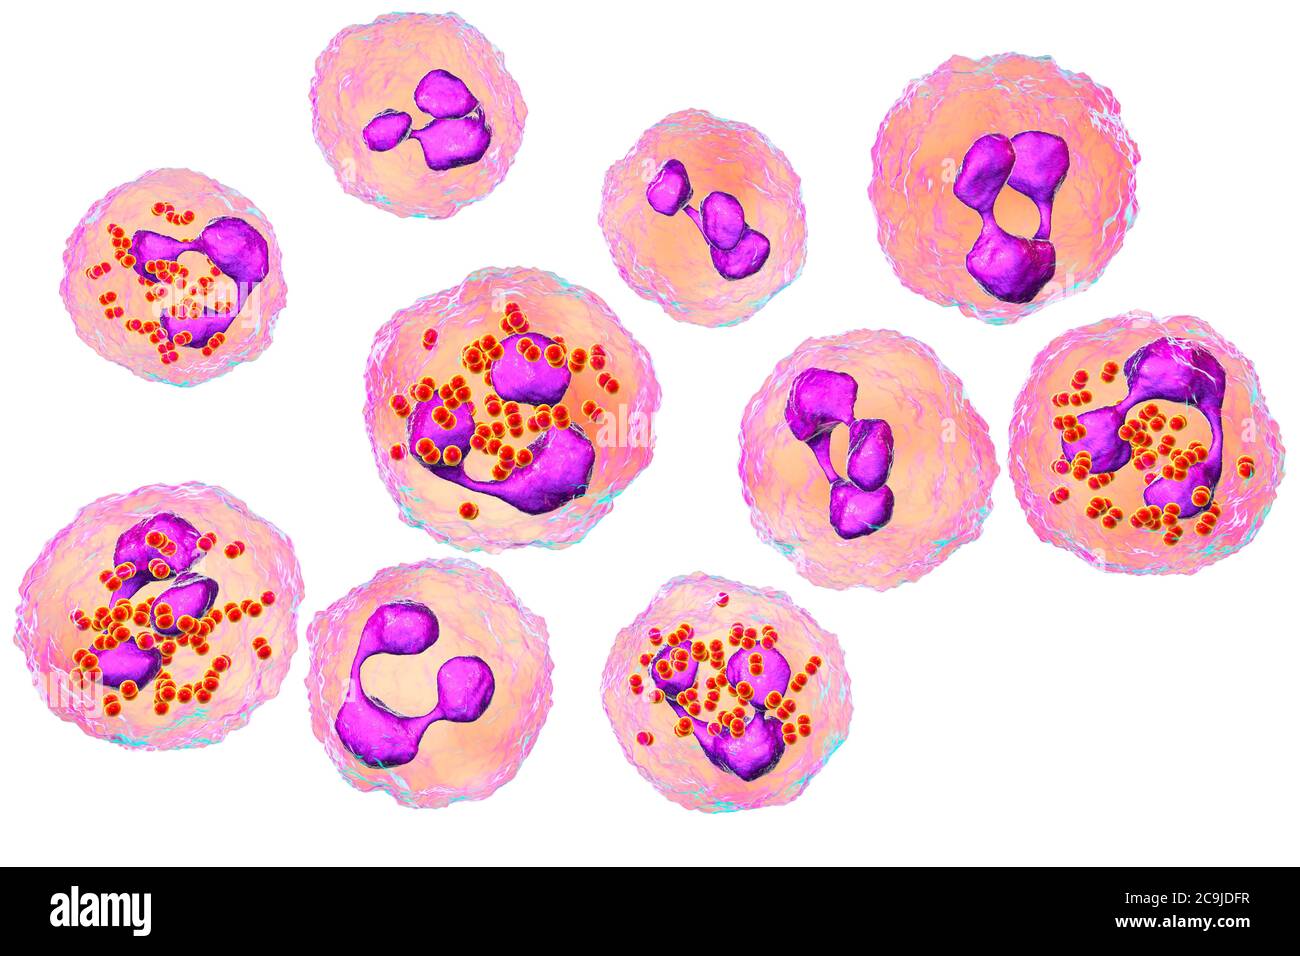 Meningokokken-Meningitis. Computer-Illustration zeigt Liquor mit zahlreichen Neutrophilen mit Neisseria meningitidis Bakterien insid Stockfoto